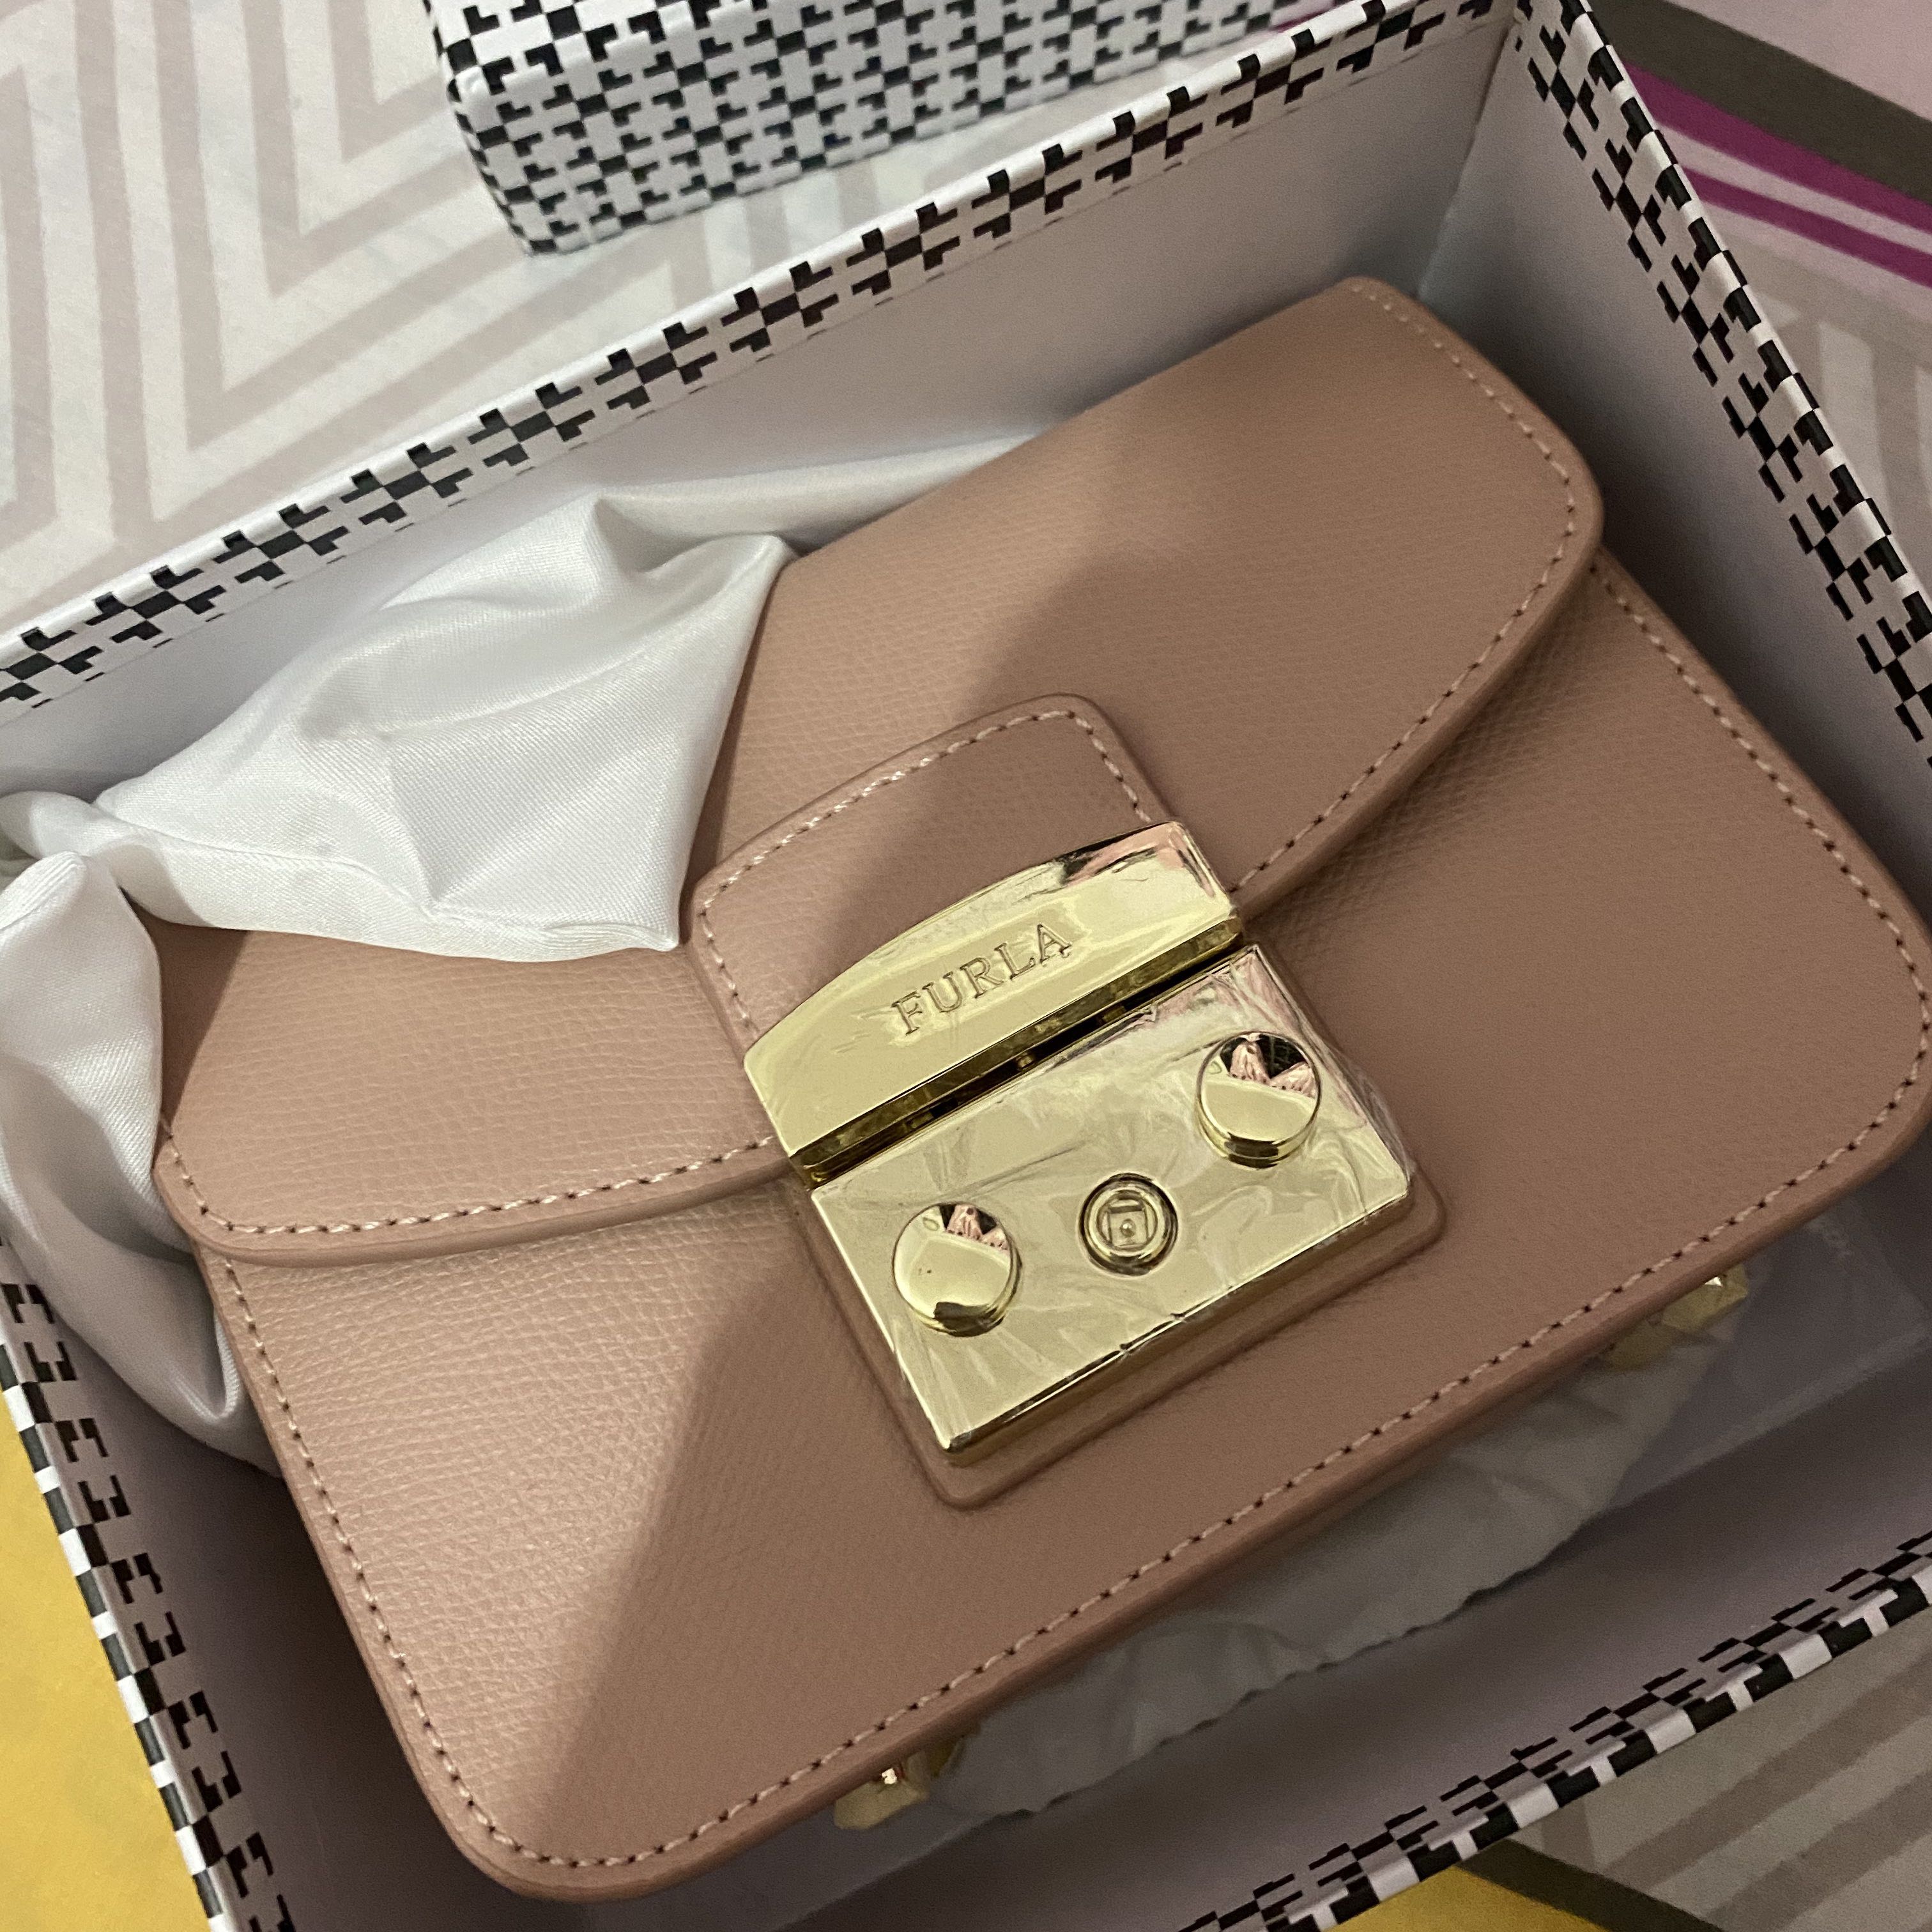 Furla Mini Metropolis Bag in Dusty Pink, Women's Fashion, & Wallets, Cross-body Bags on Carousell